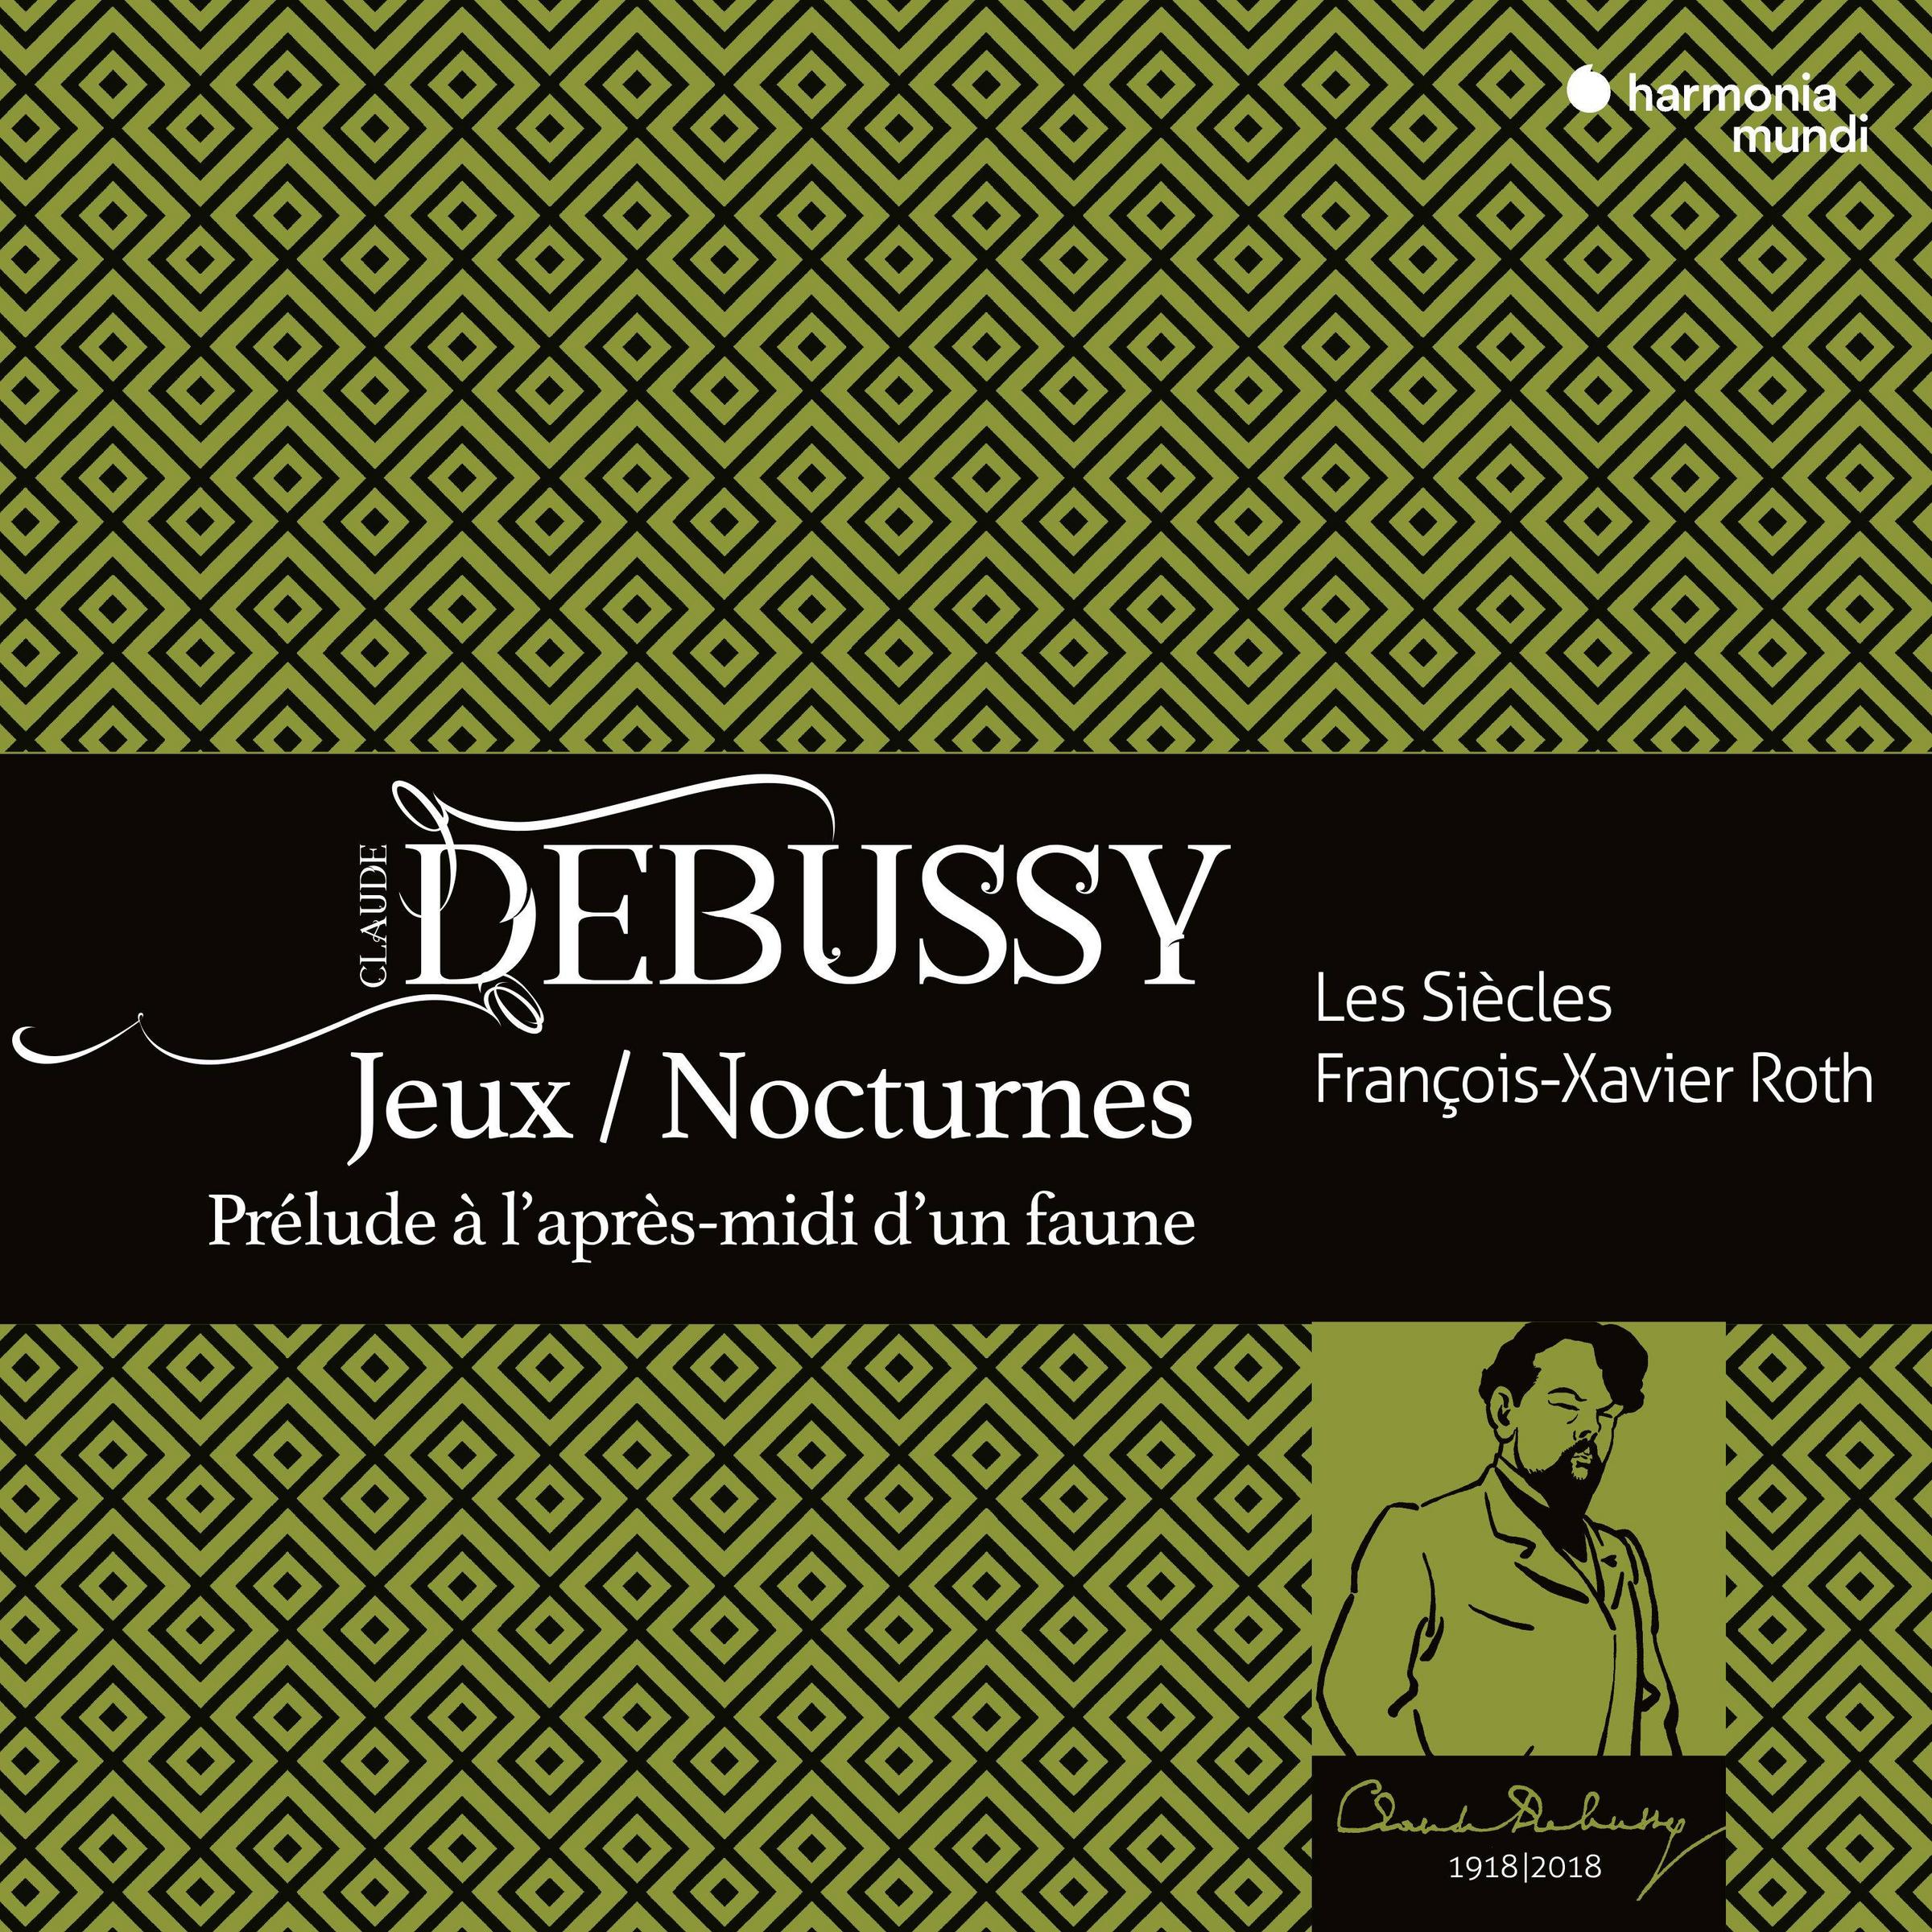 Les Siecles & Francois-Xavier Roth – Debussy: Jeux, Nocturnes, Prelude a l’apres midi d’un faune (2018) [FLAC 24bit/44,1kHz]